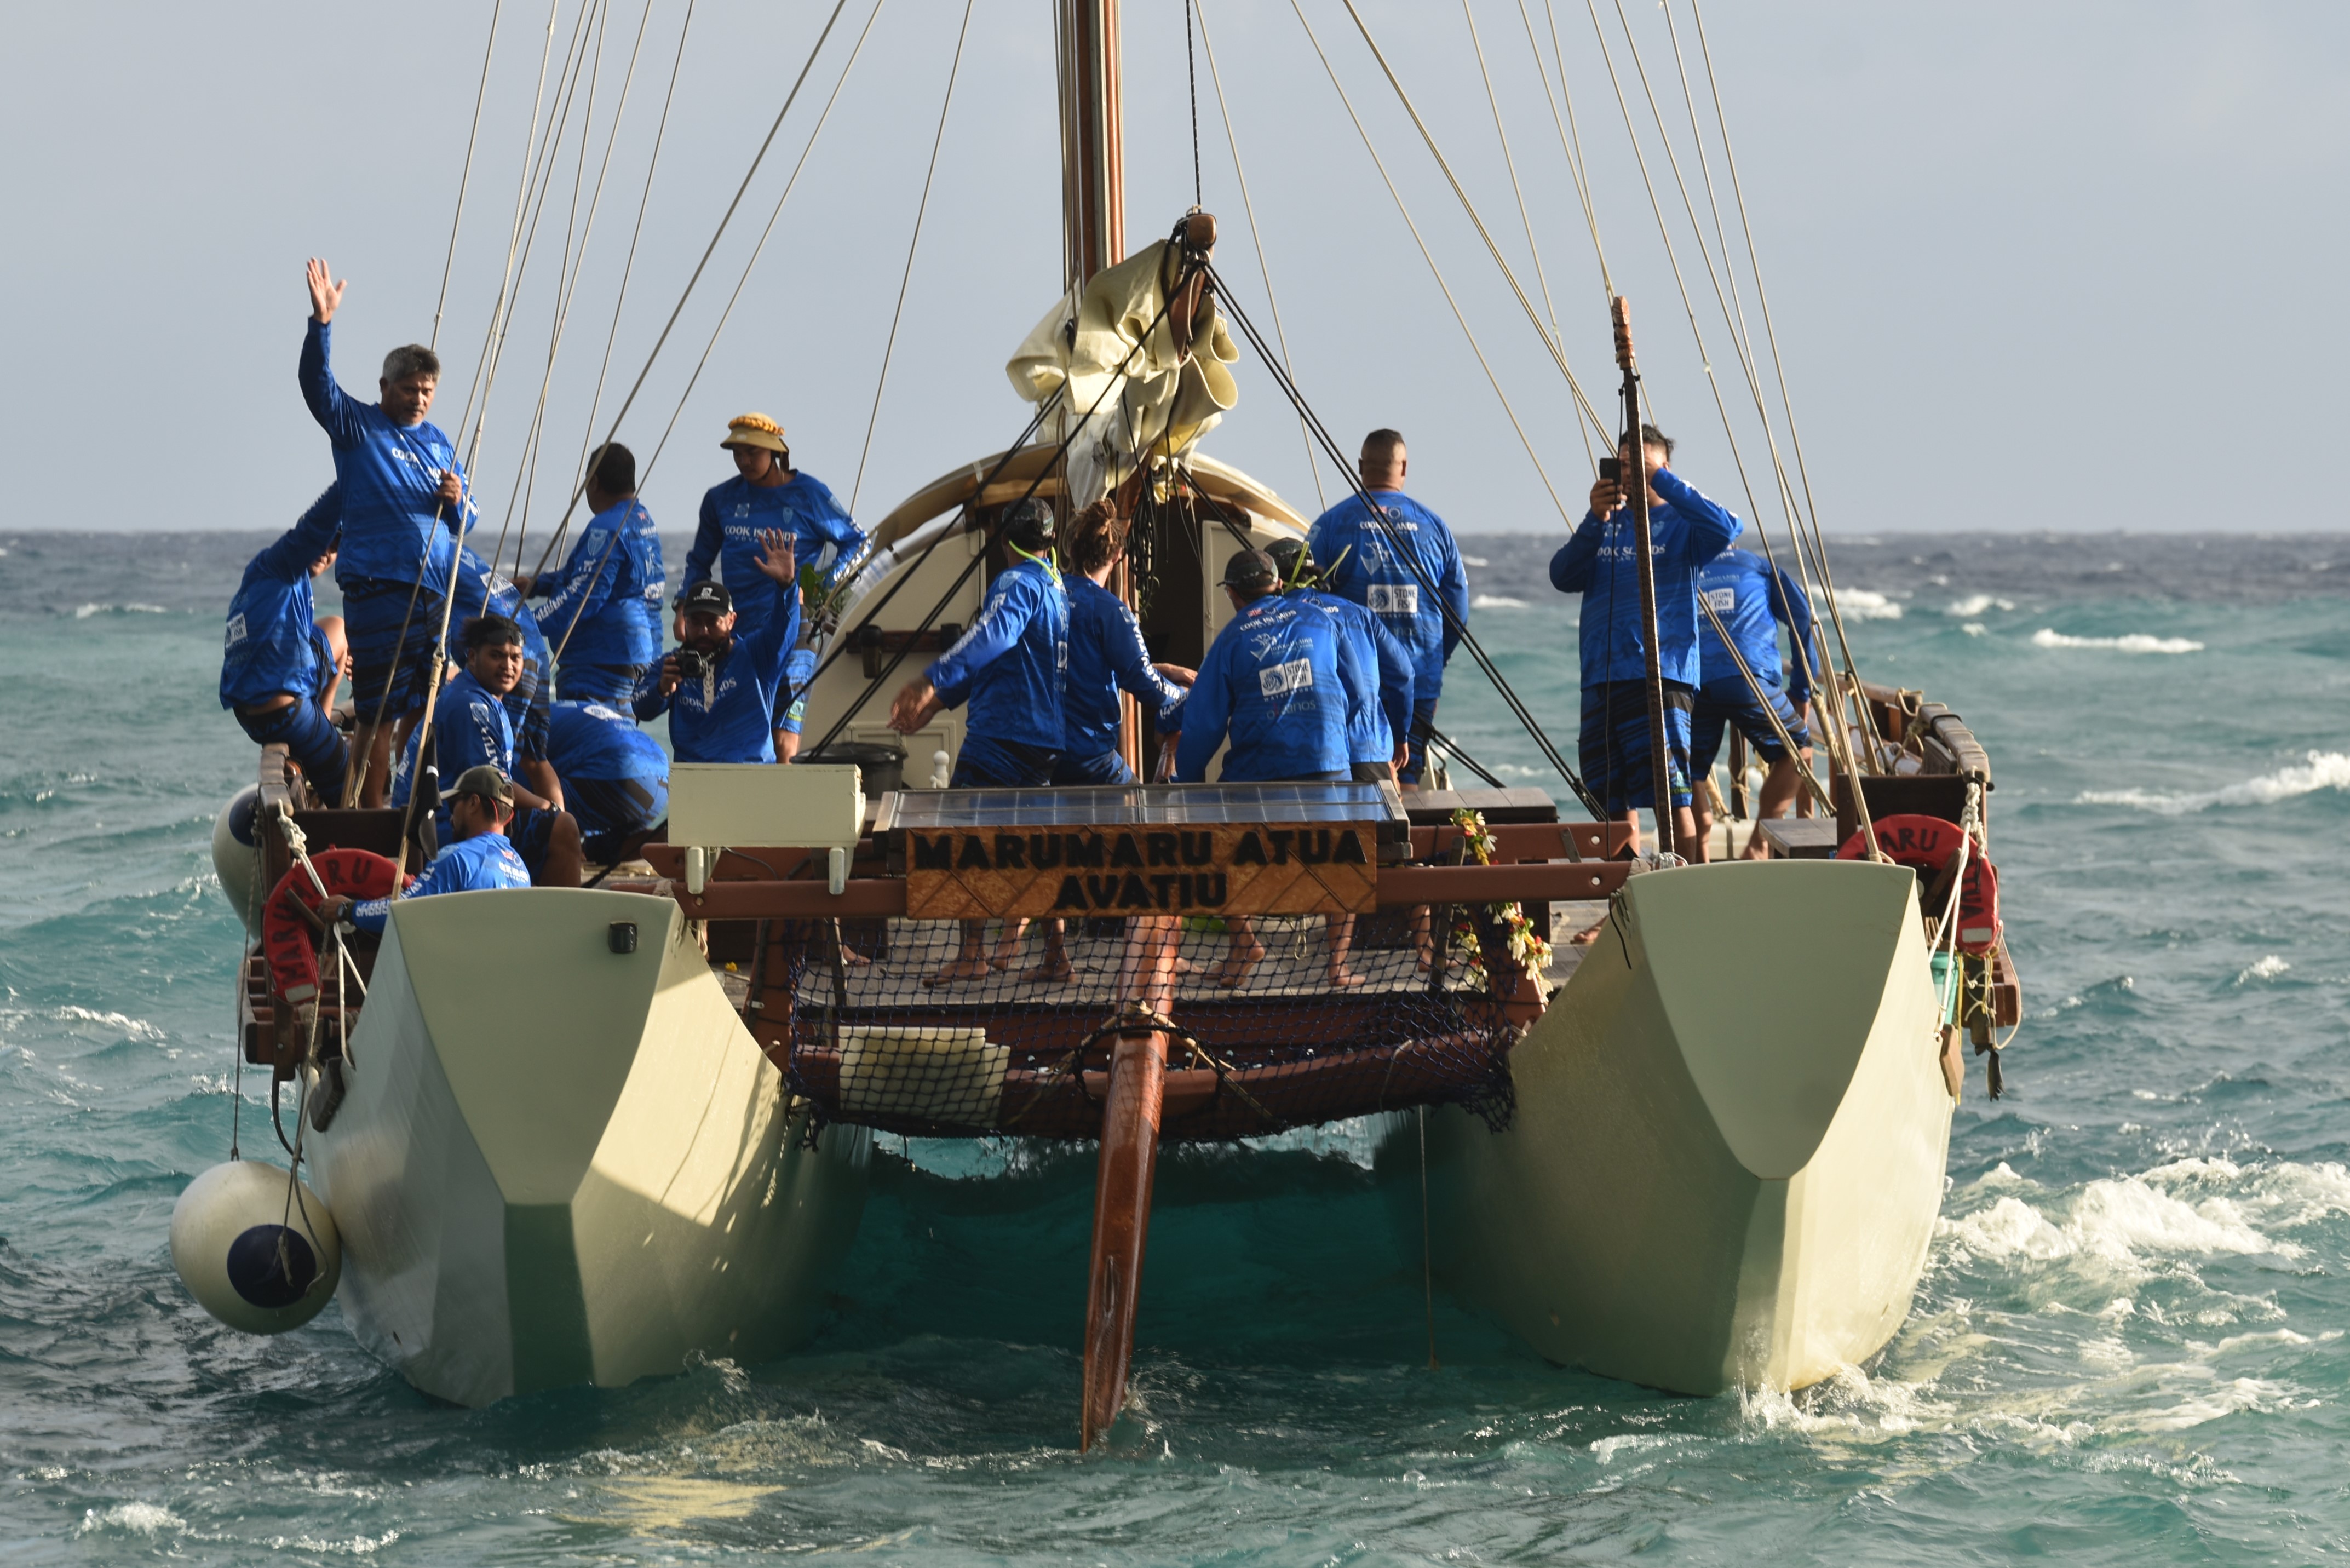 Vaka Marumaru Atua crew embarks on cultural voyage to Hawaii